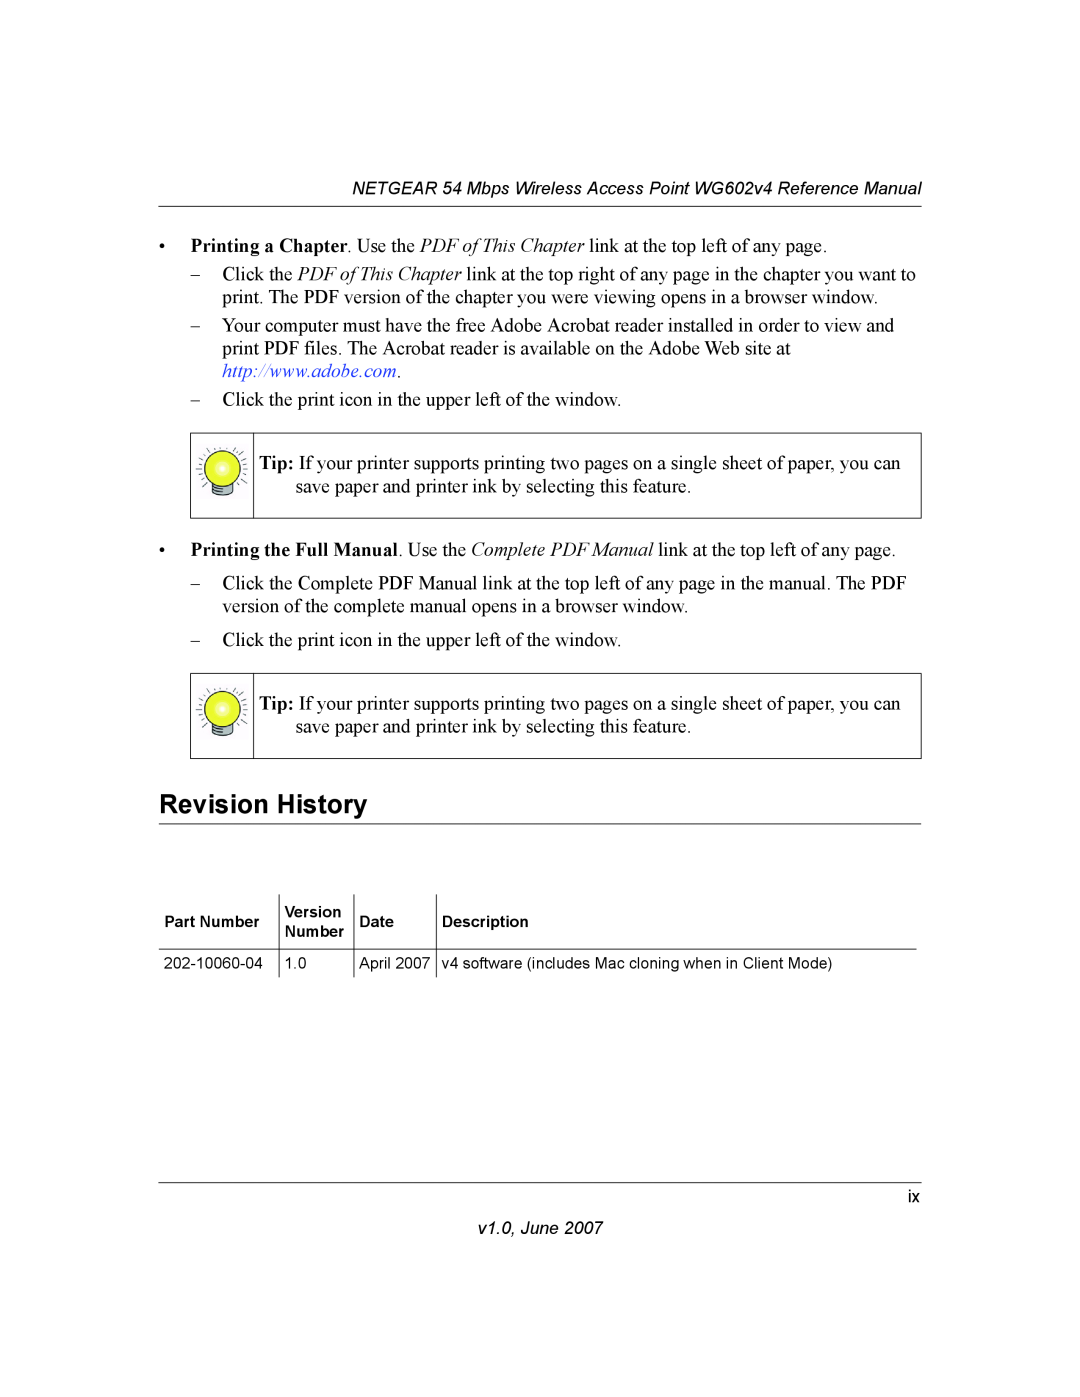 NETGEAR WG602V4 manual Revision History, Part Number, Version, Date, Description, 202-10060-04, April 